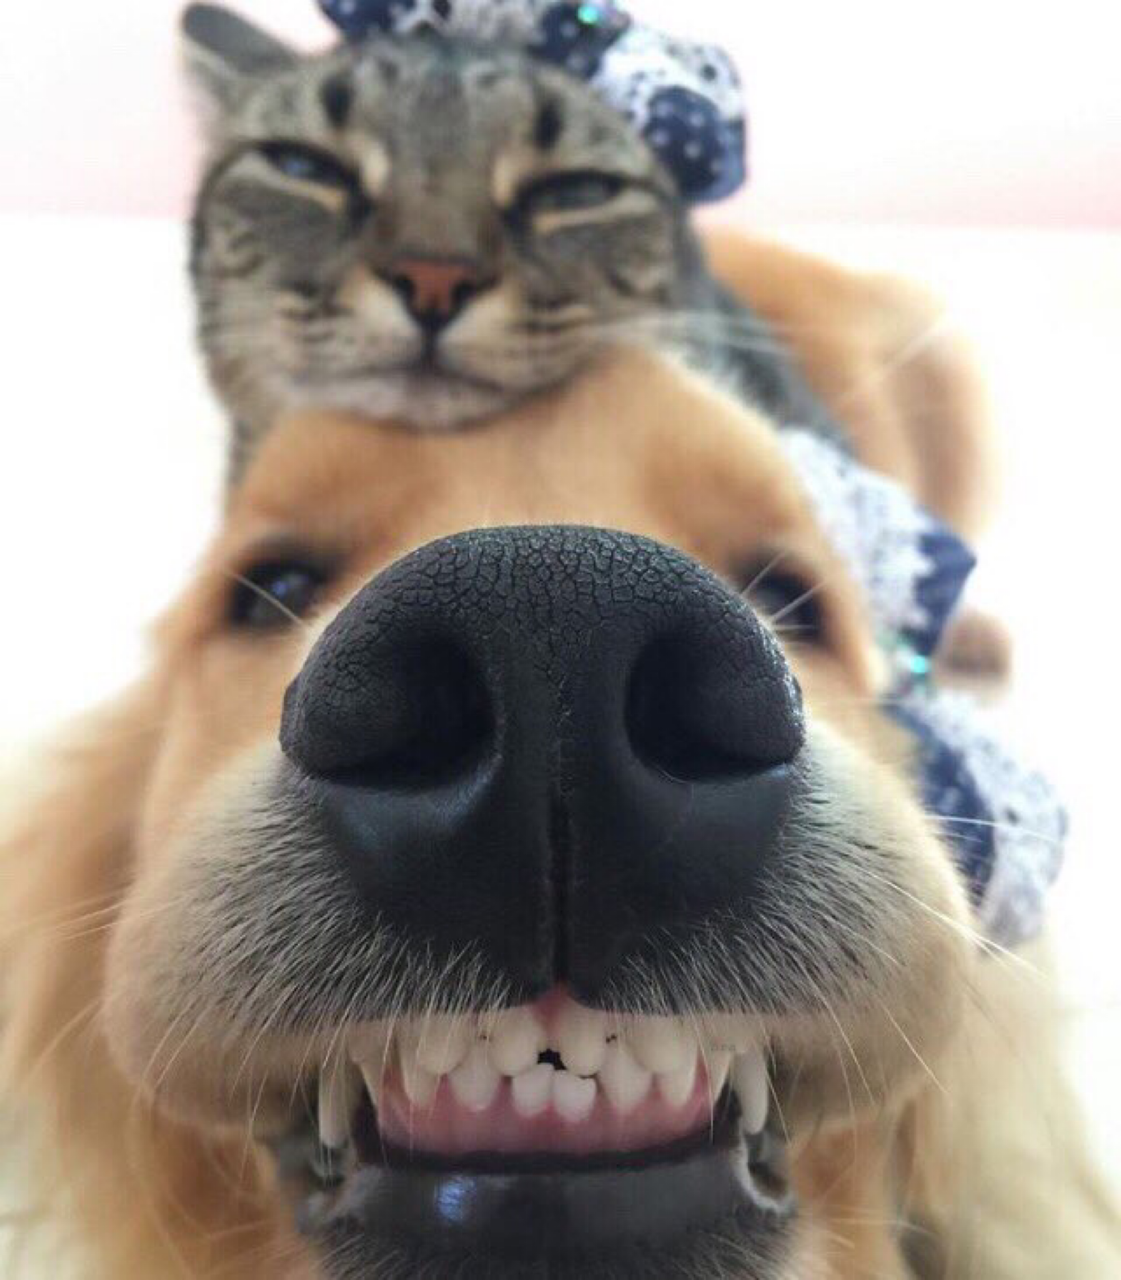 Kotya seems to be skeptical about selfies - cat, Dog, Selfie, Nose, Smile